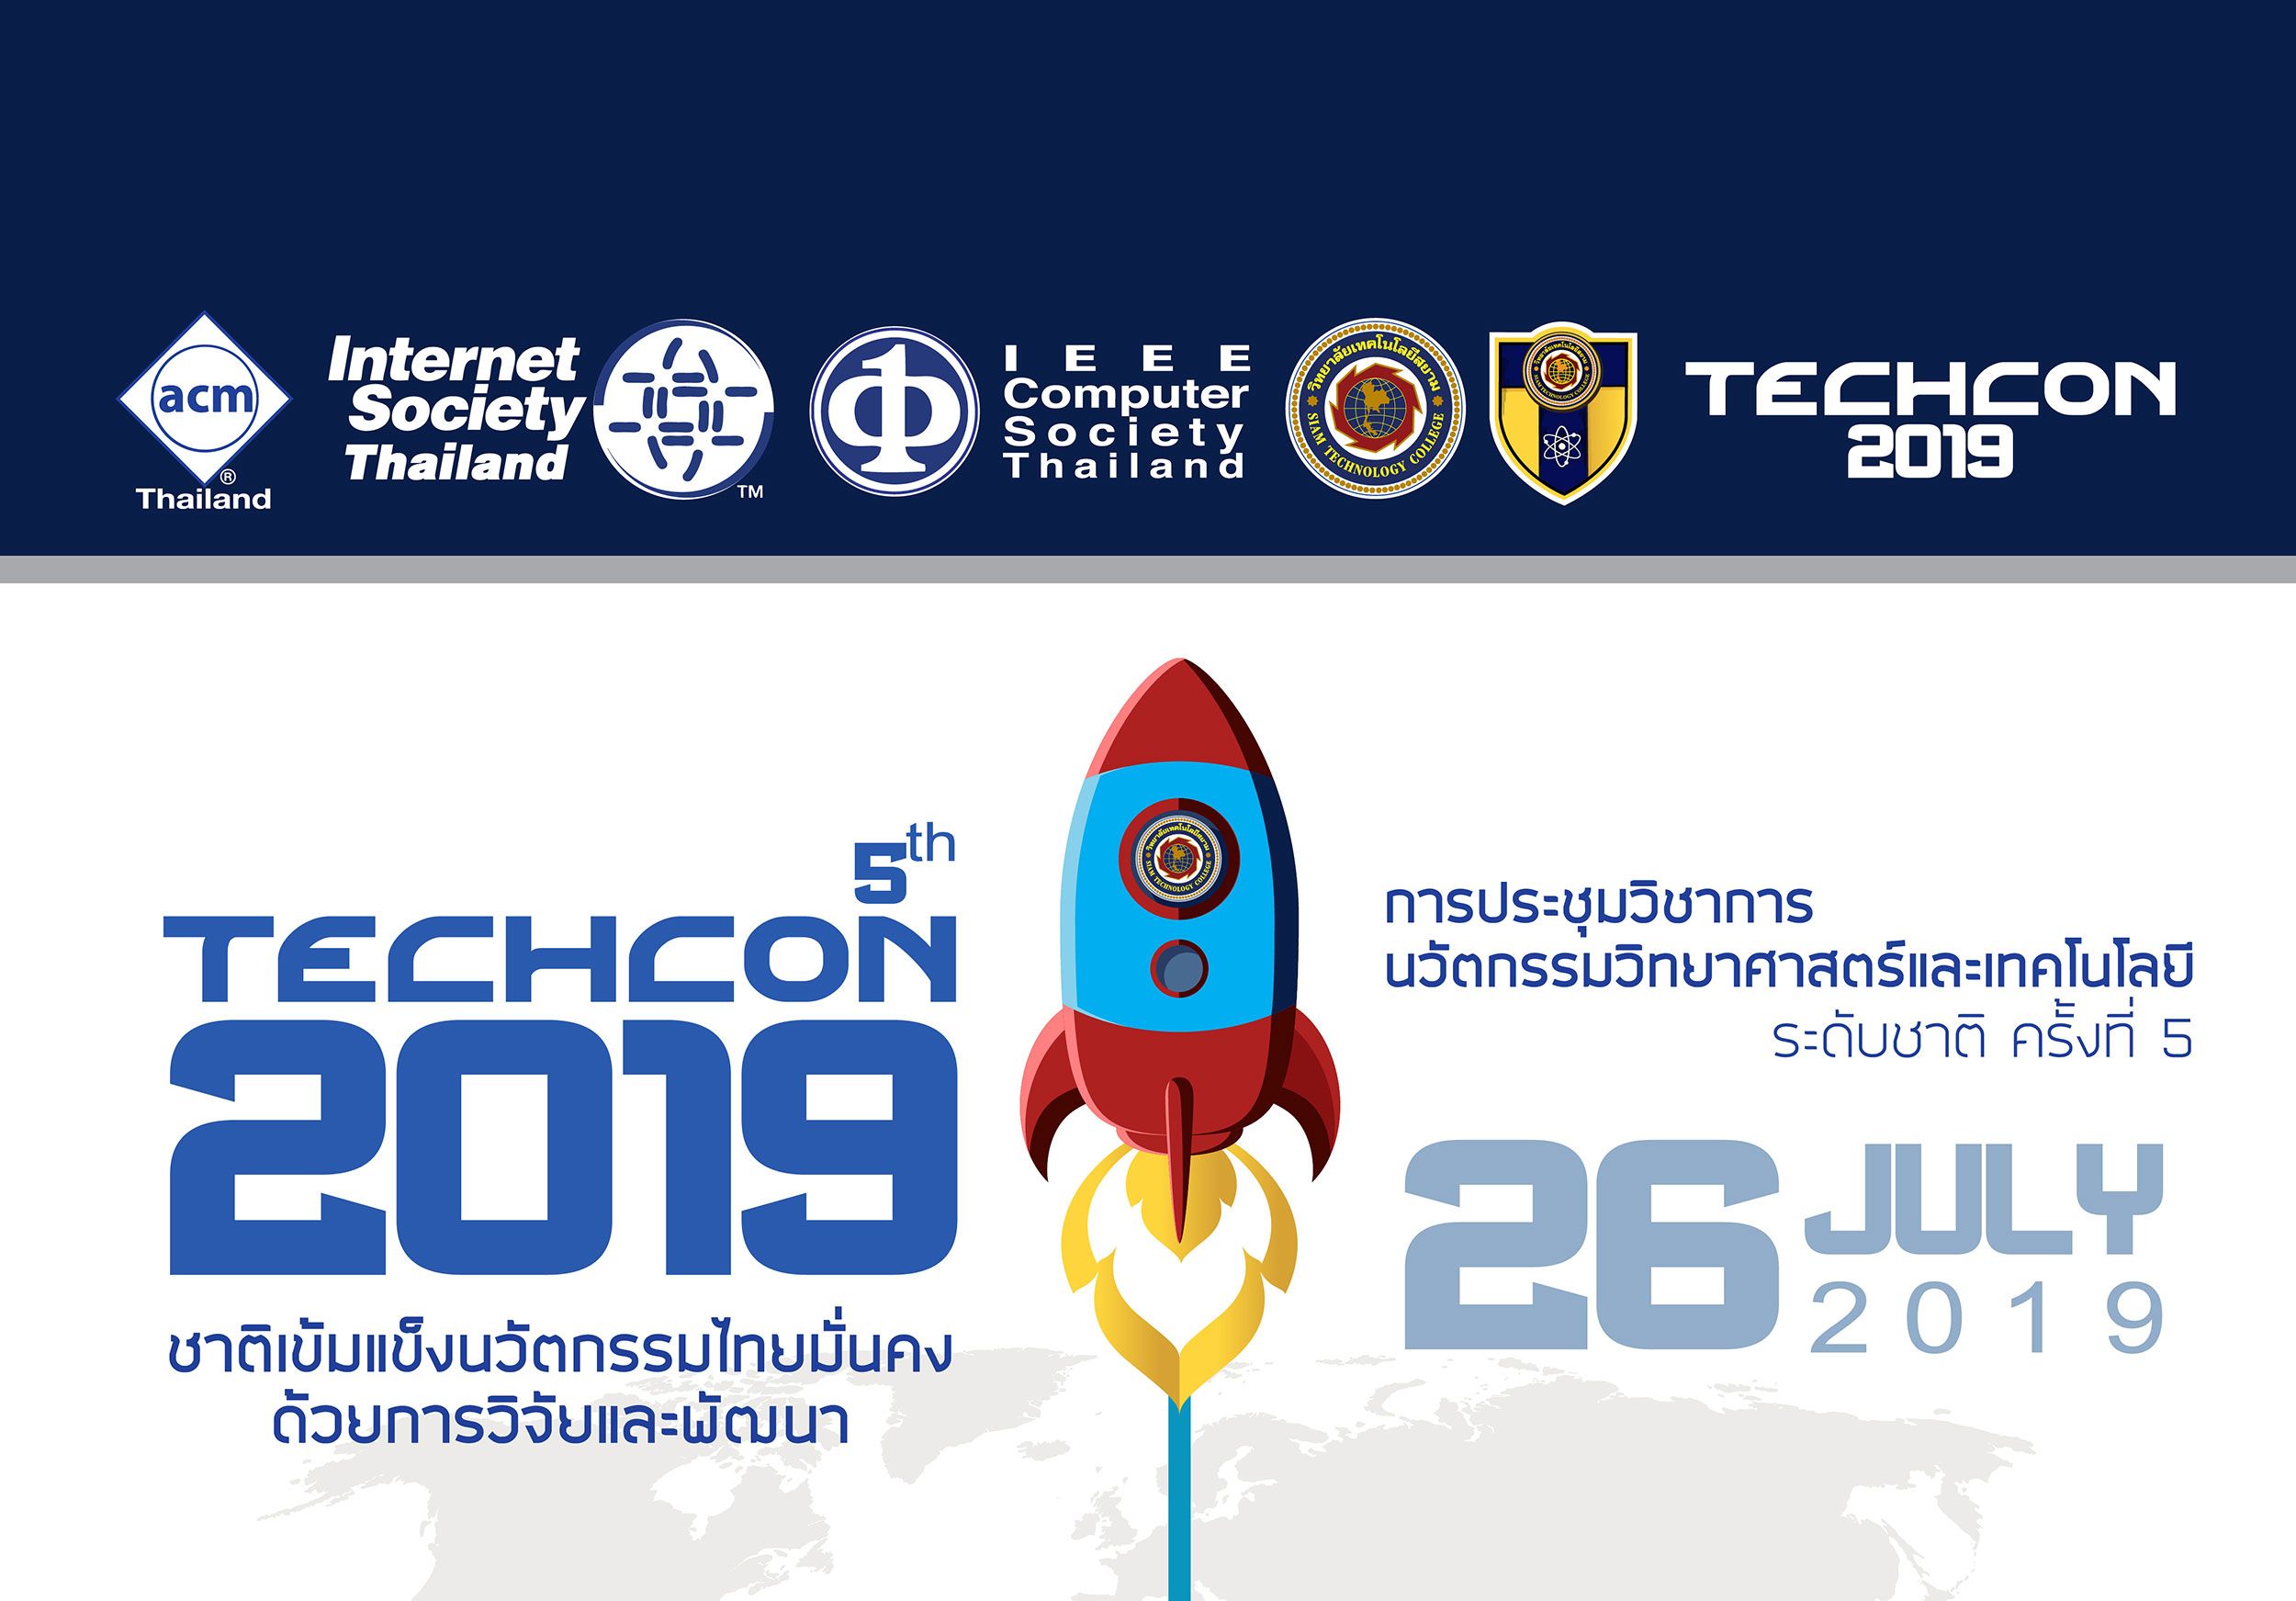 ขอเชิญเข้าร่วมการประชุมวิชาการ นวัตกรรมวิทยาศาสตร์และเทคโนโลยี ระดับชาติ ครั้งที่ 5  Techcon 2019 ในวันที่ 26 กรกฏาคม 2019